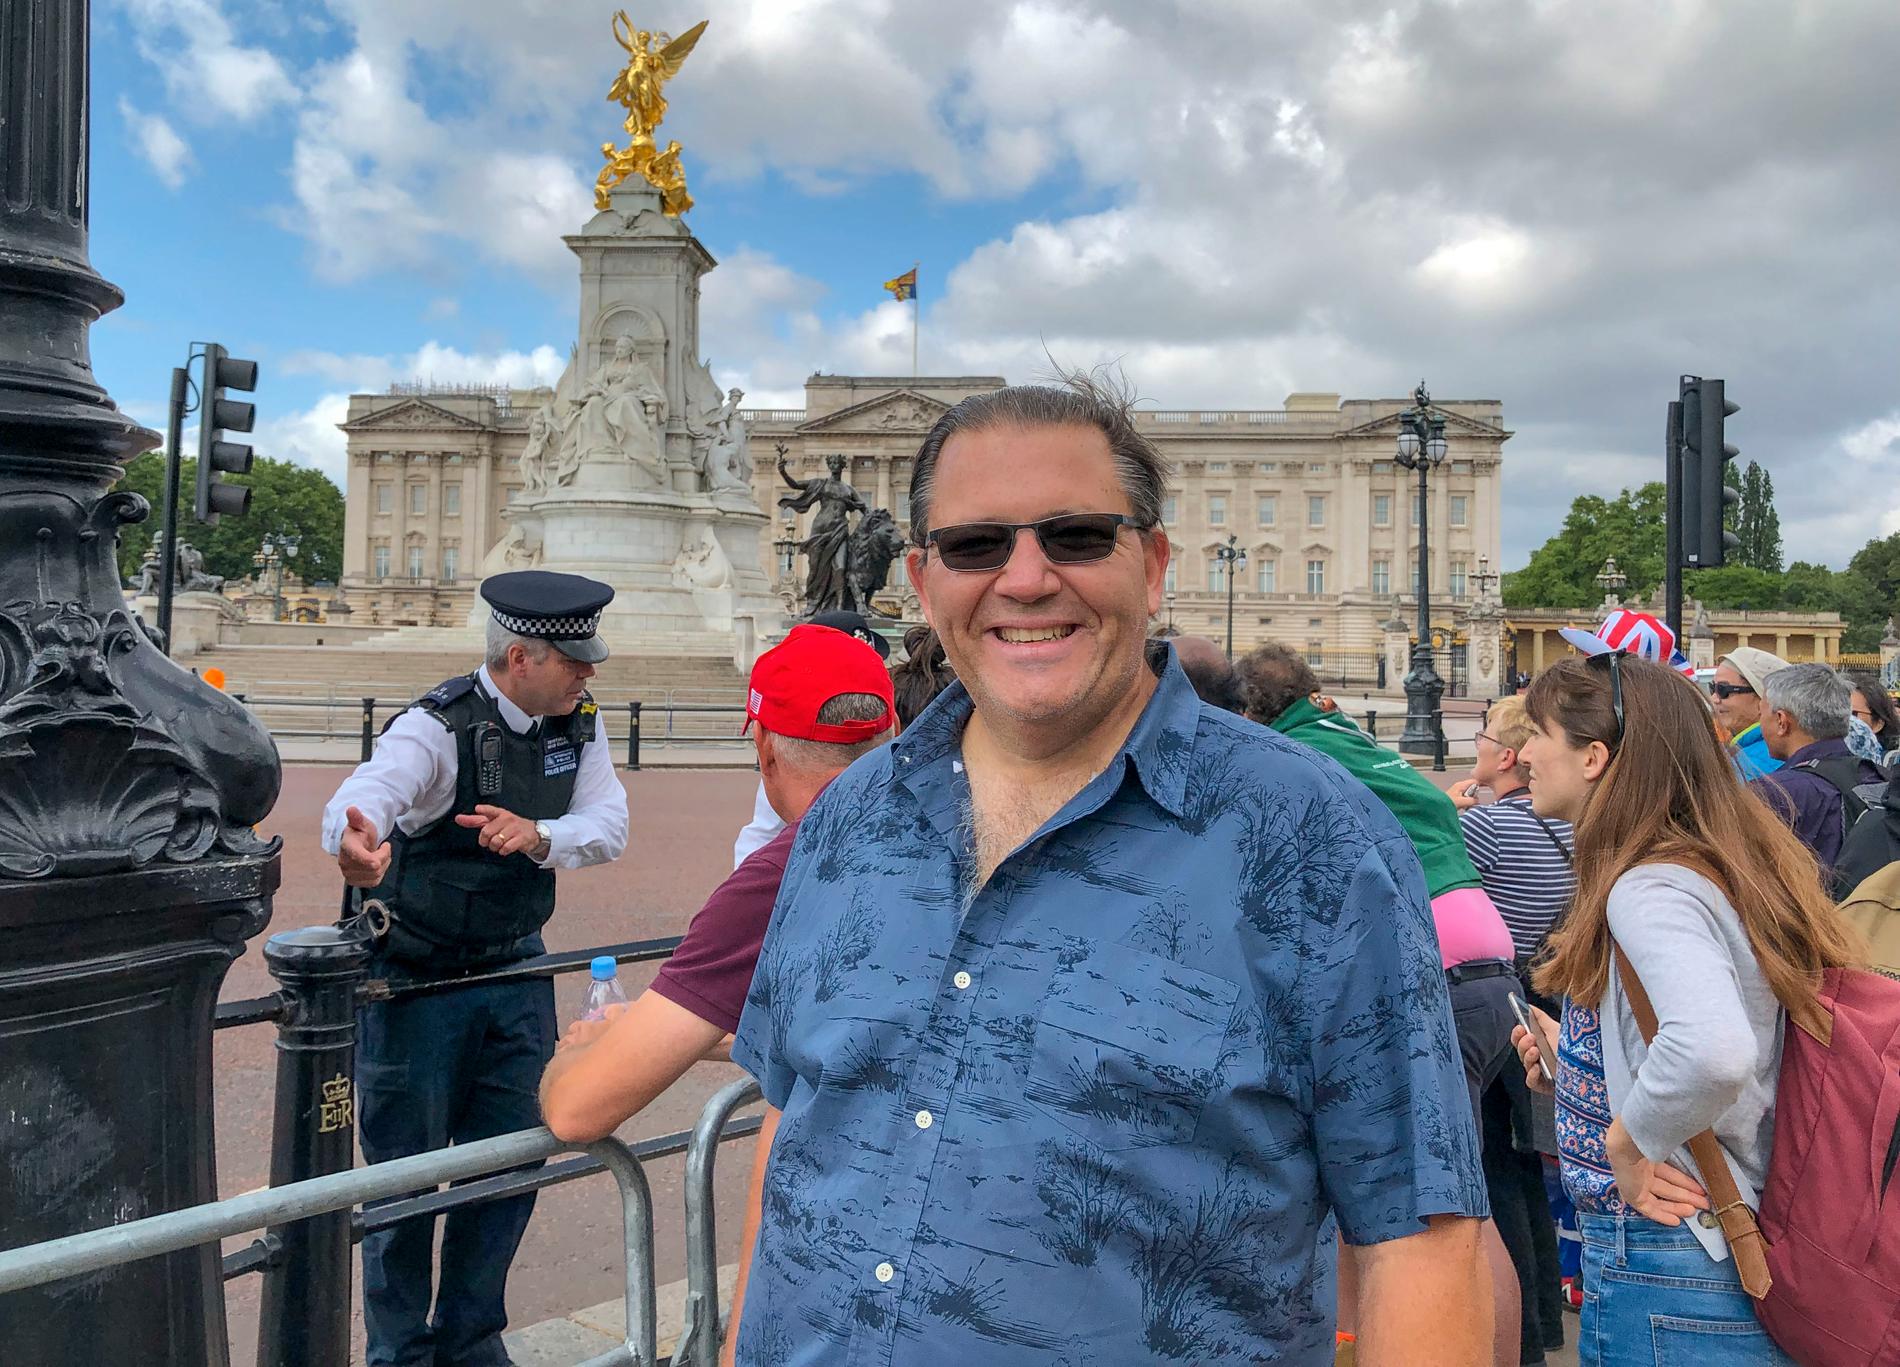 Jerry Foster från Florida turistar i London och passar på att spana in president Trumps besök i Buckingham Palace. "Vi älskar honom", säger Jerry.